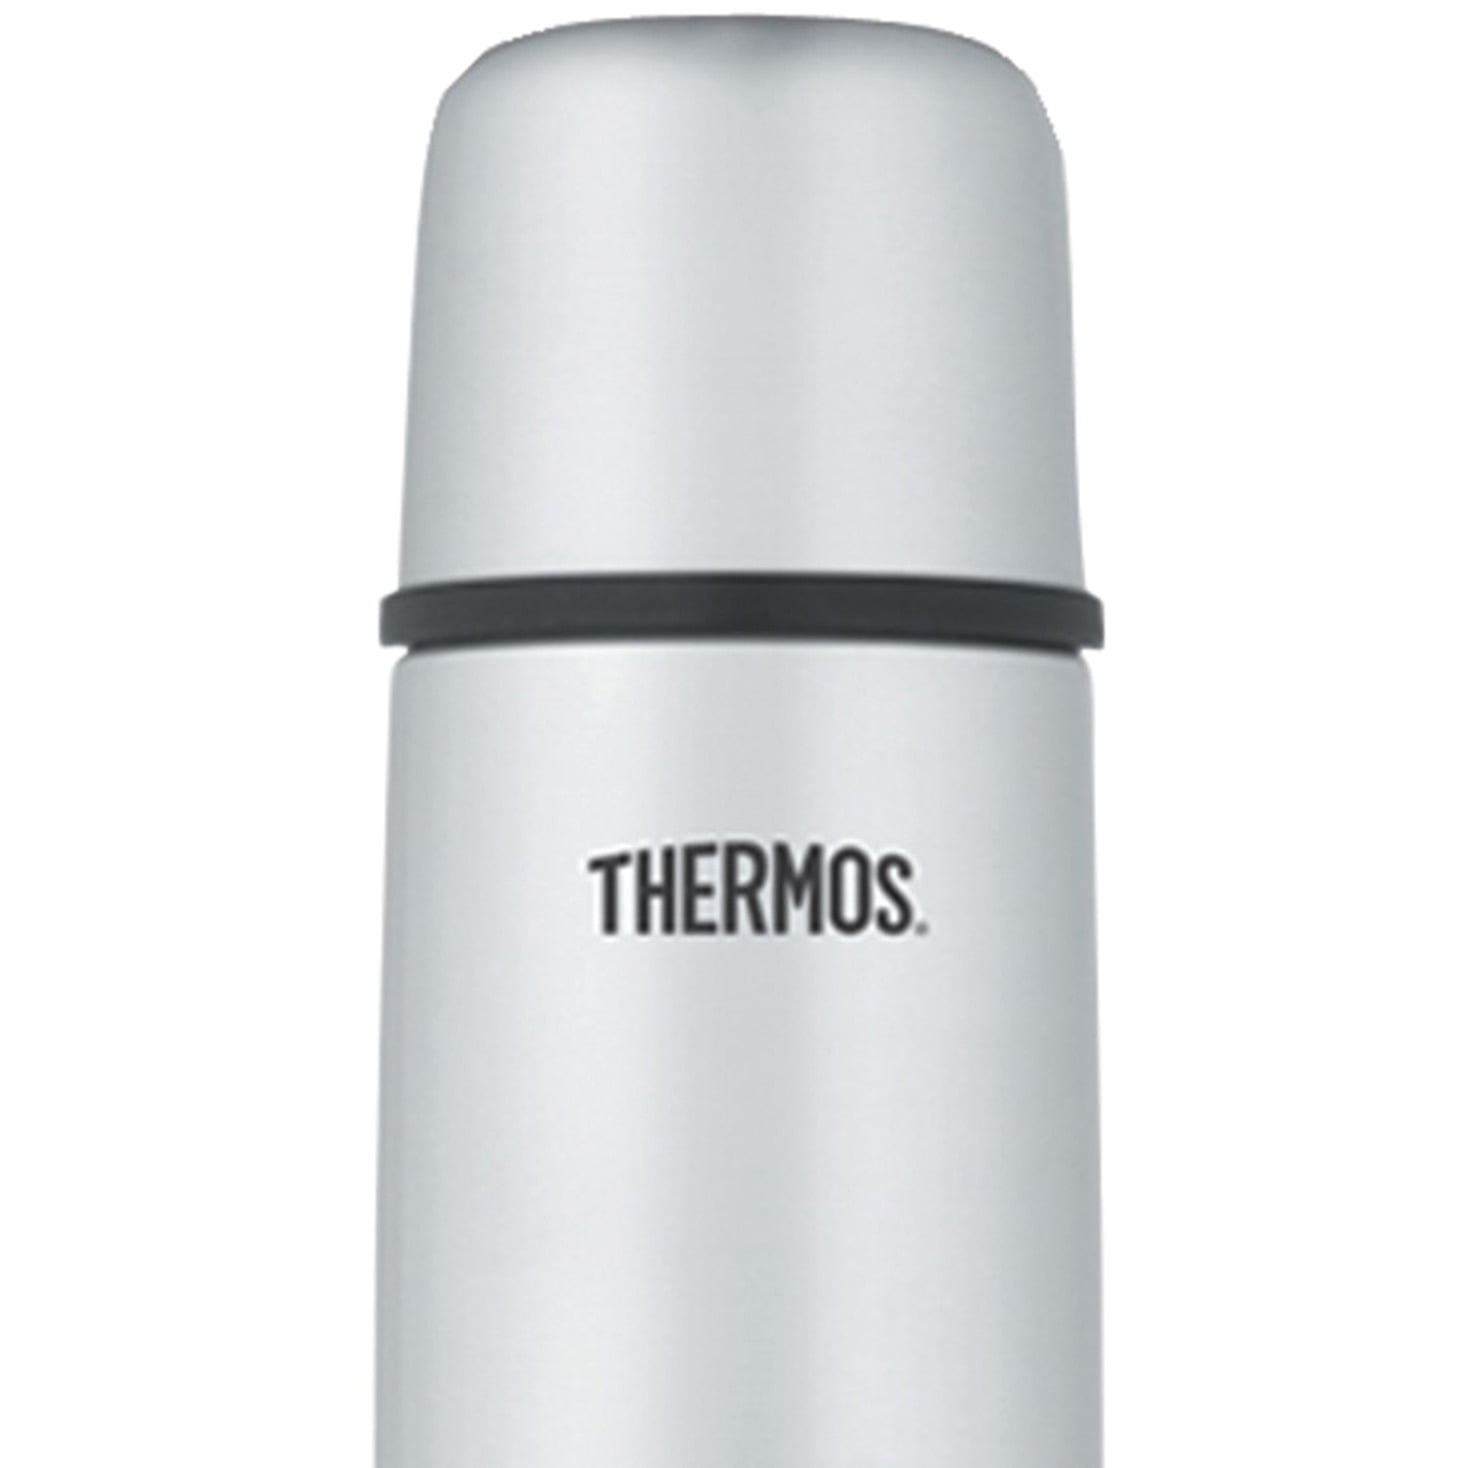 Thermos Vacuum Insulated